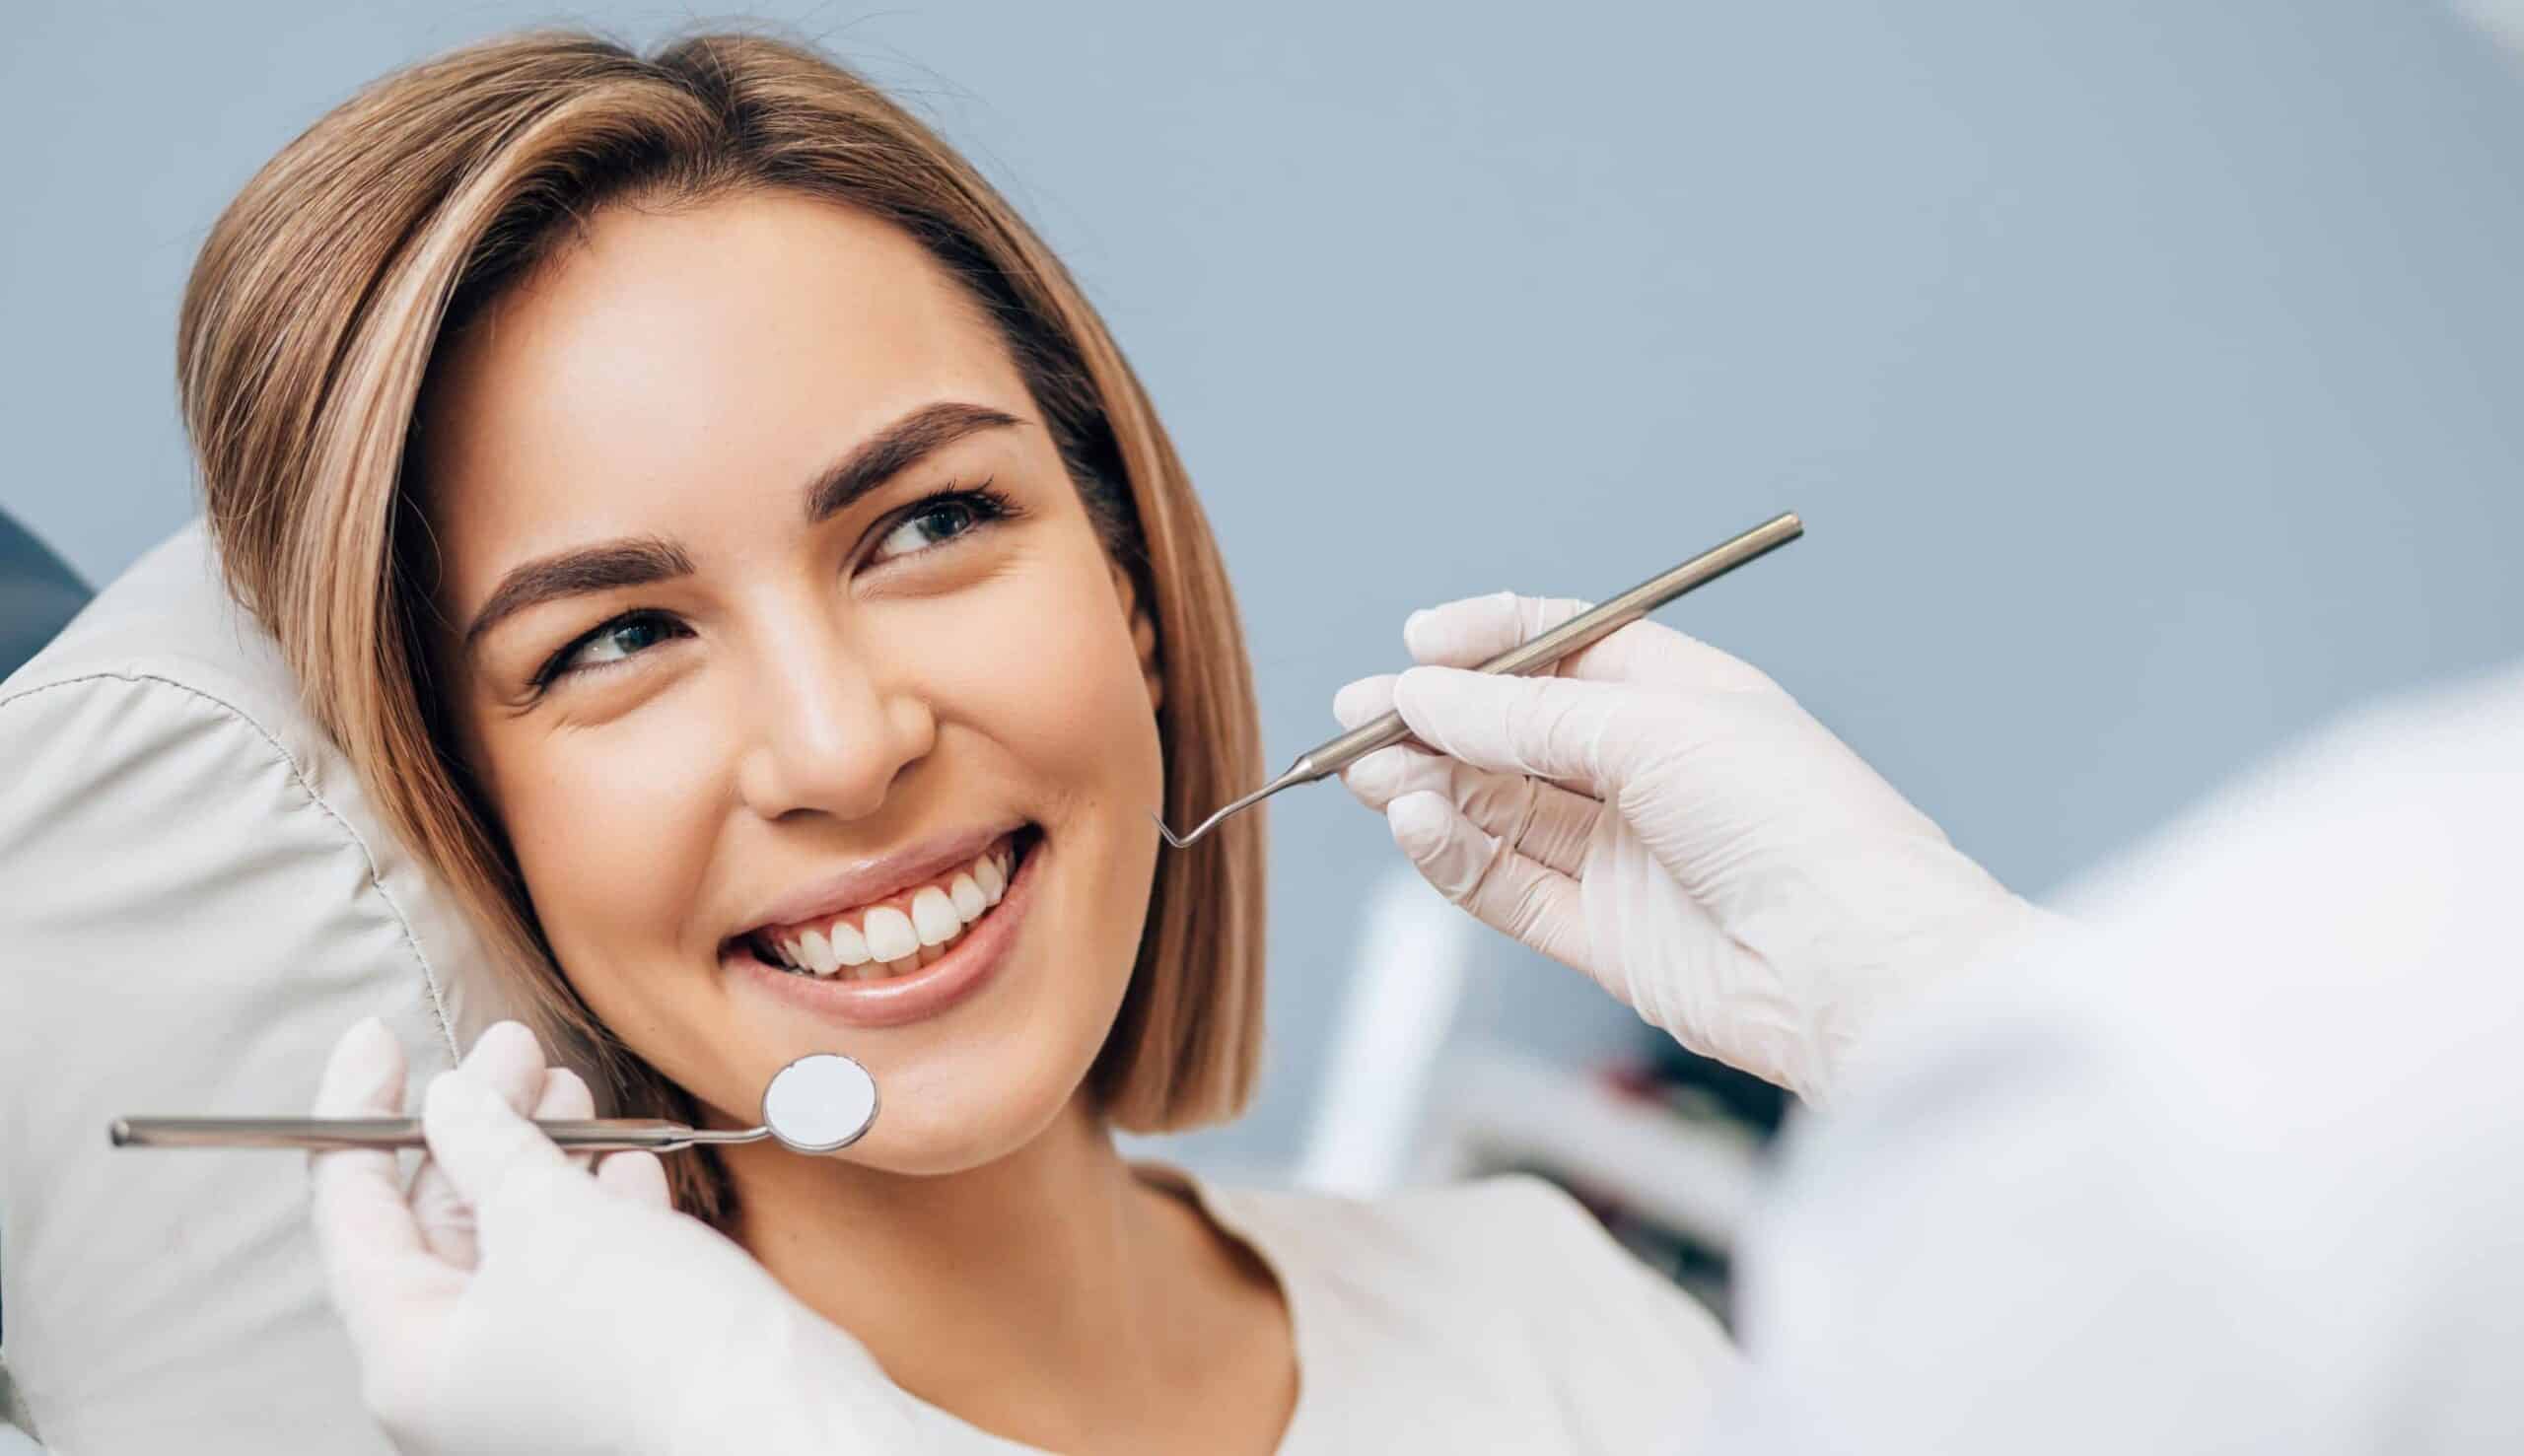 Quelle est l'importance du bilan parodontal avant la pose d'implants dentaires ? | Clinique dentaire Sana Oris | Paris 8